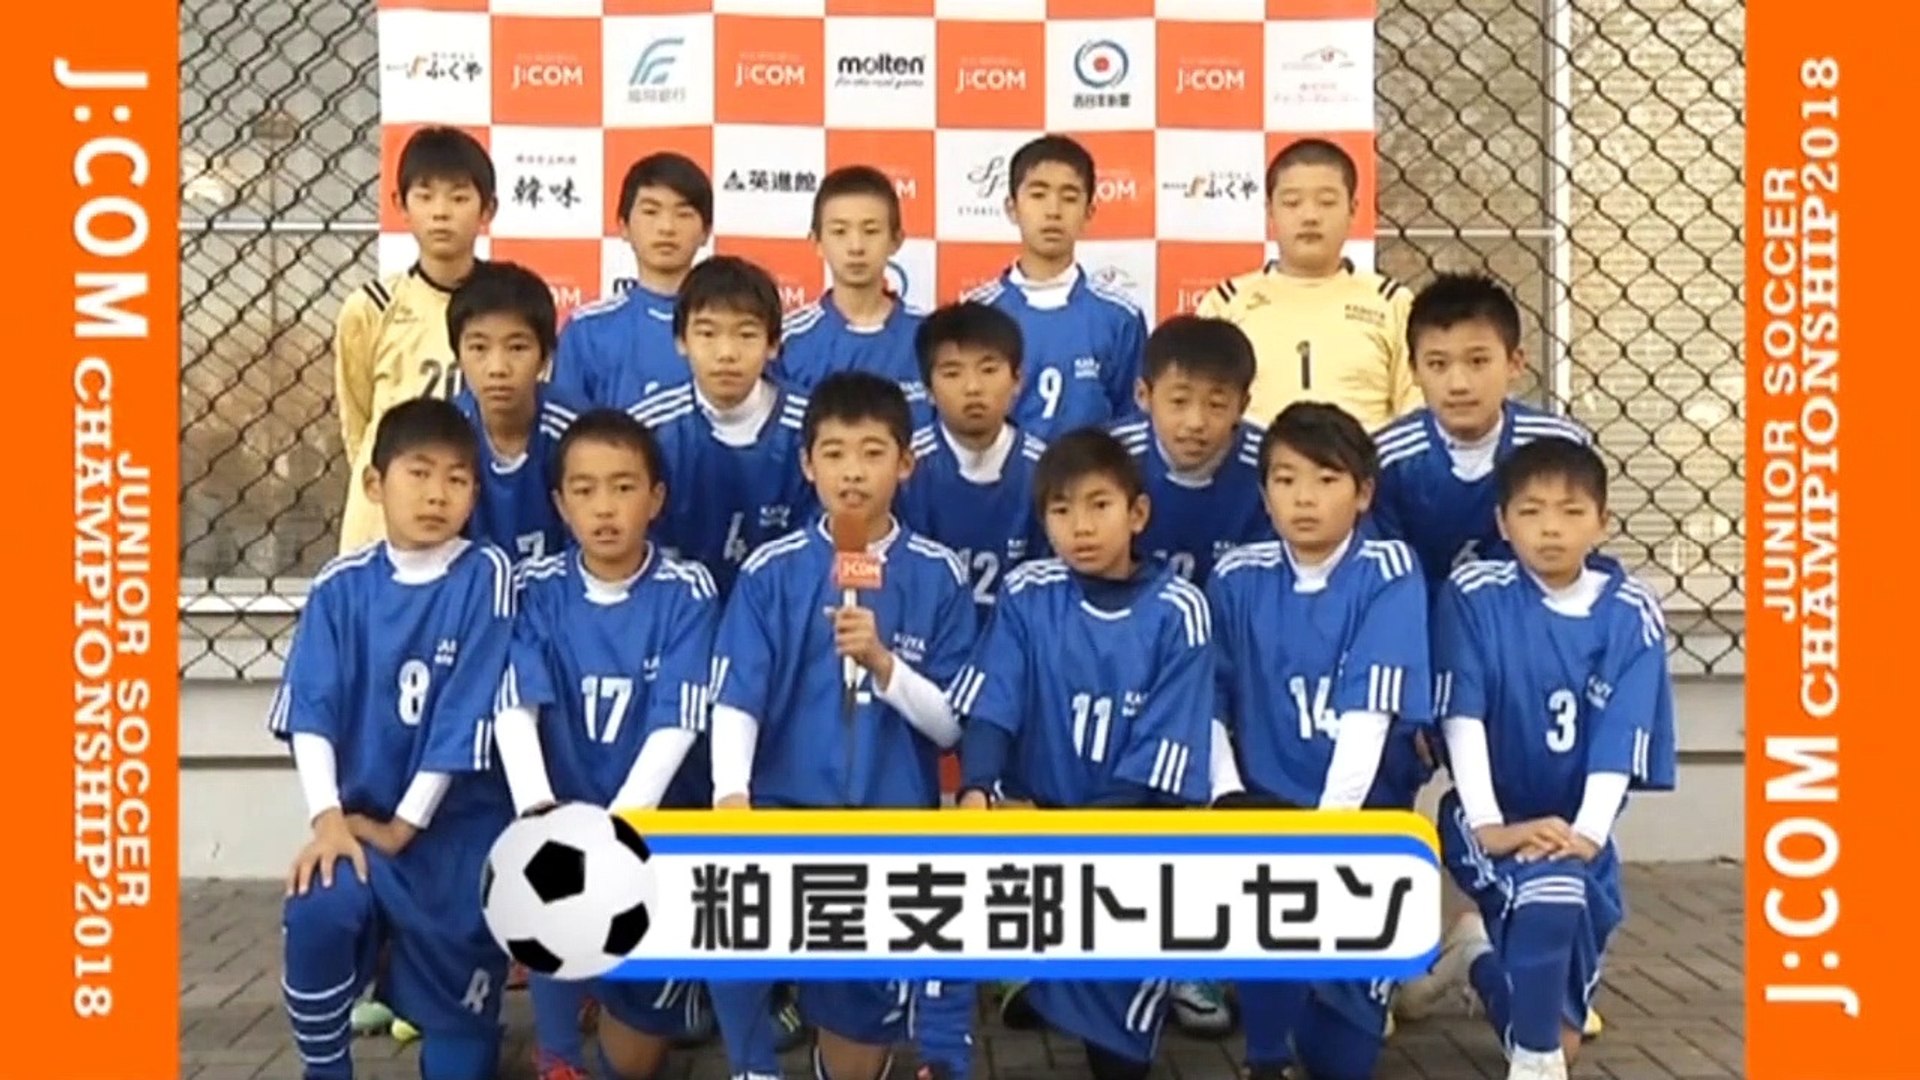 １ ４ 小学生サッカー 福岡県 ジェイコム九州杯ジュニアサッカー ジェイコムカップ ２０１８年１１月２４日 土曜日 ２５日 日曜日 動画 Dailymotion